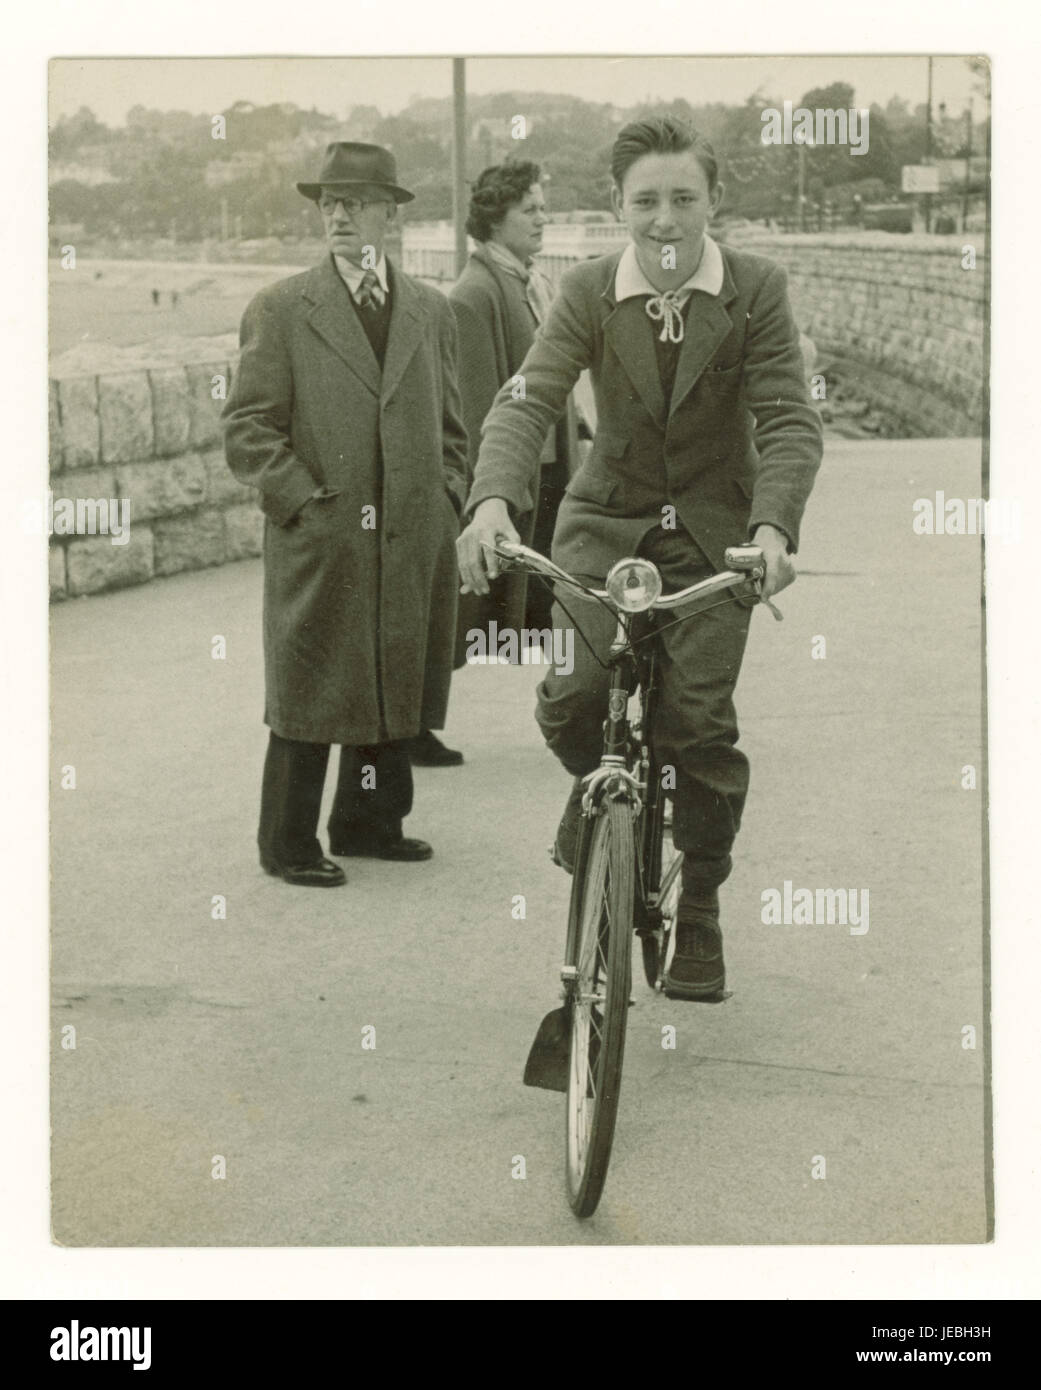 Photo nostalgique originale de cyclisme d'époque d'un adolescent insouciant sur son vélo sur la promenade de Torquay - une ville balnéaire typique de la Grande-Bretagne, peut-être en vacances, des années 1940, Torquay, Devon, ROYAUME-UNI Banque D'Images